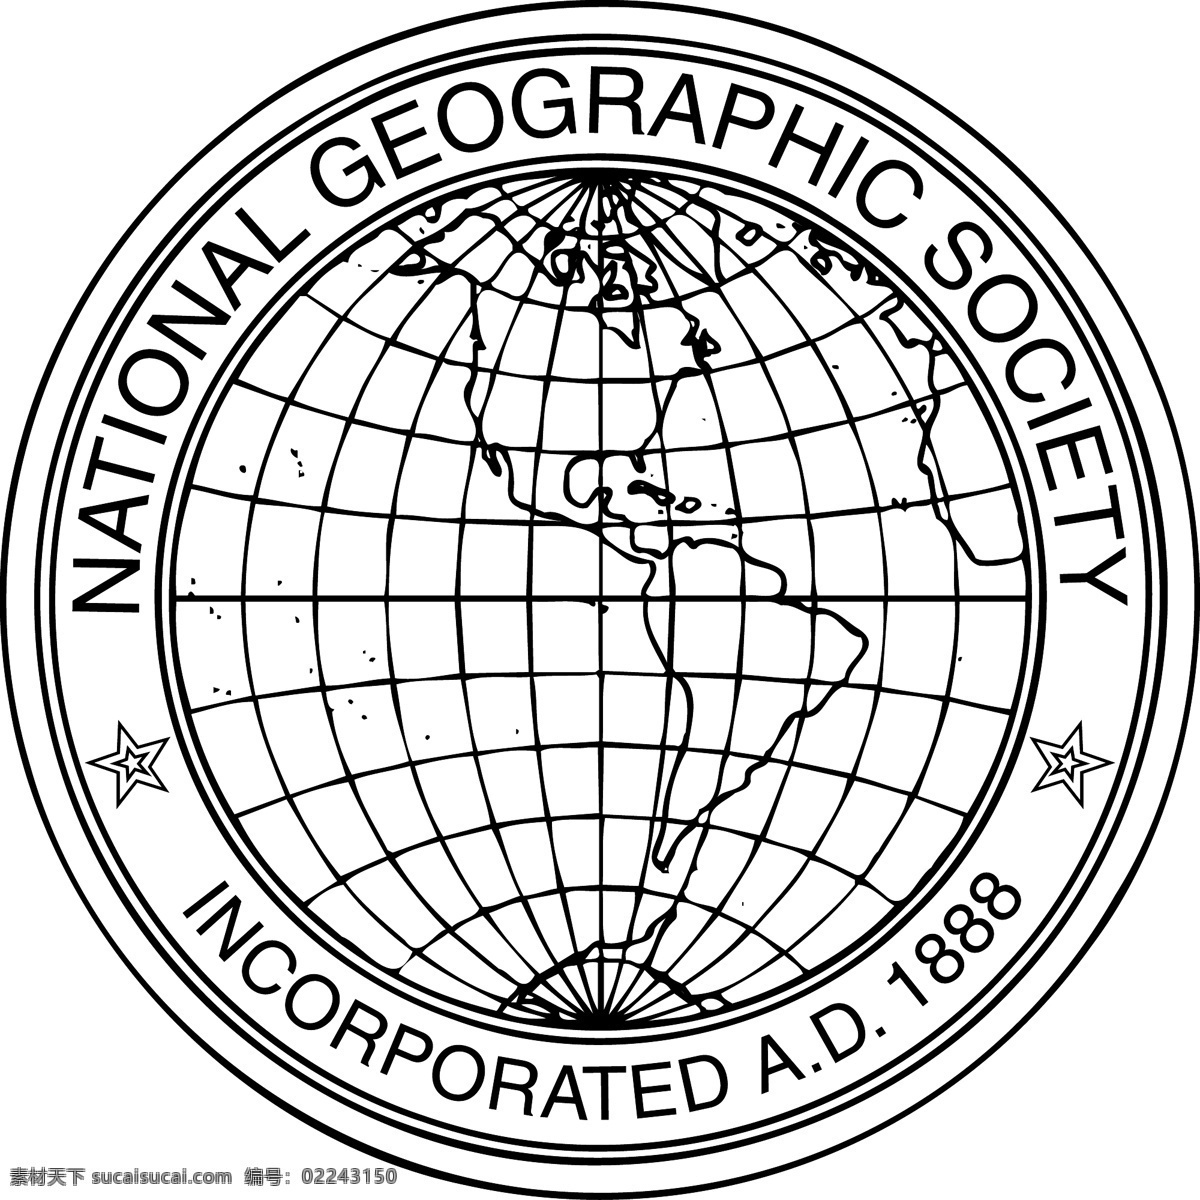 美国 国家地理 杂志 社会 自由 标志 psd源文件 logo设计